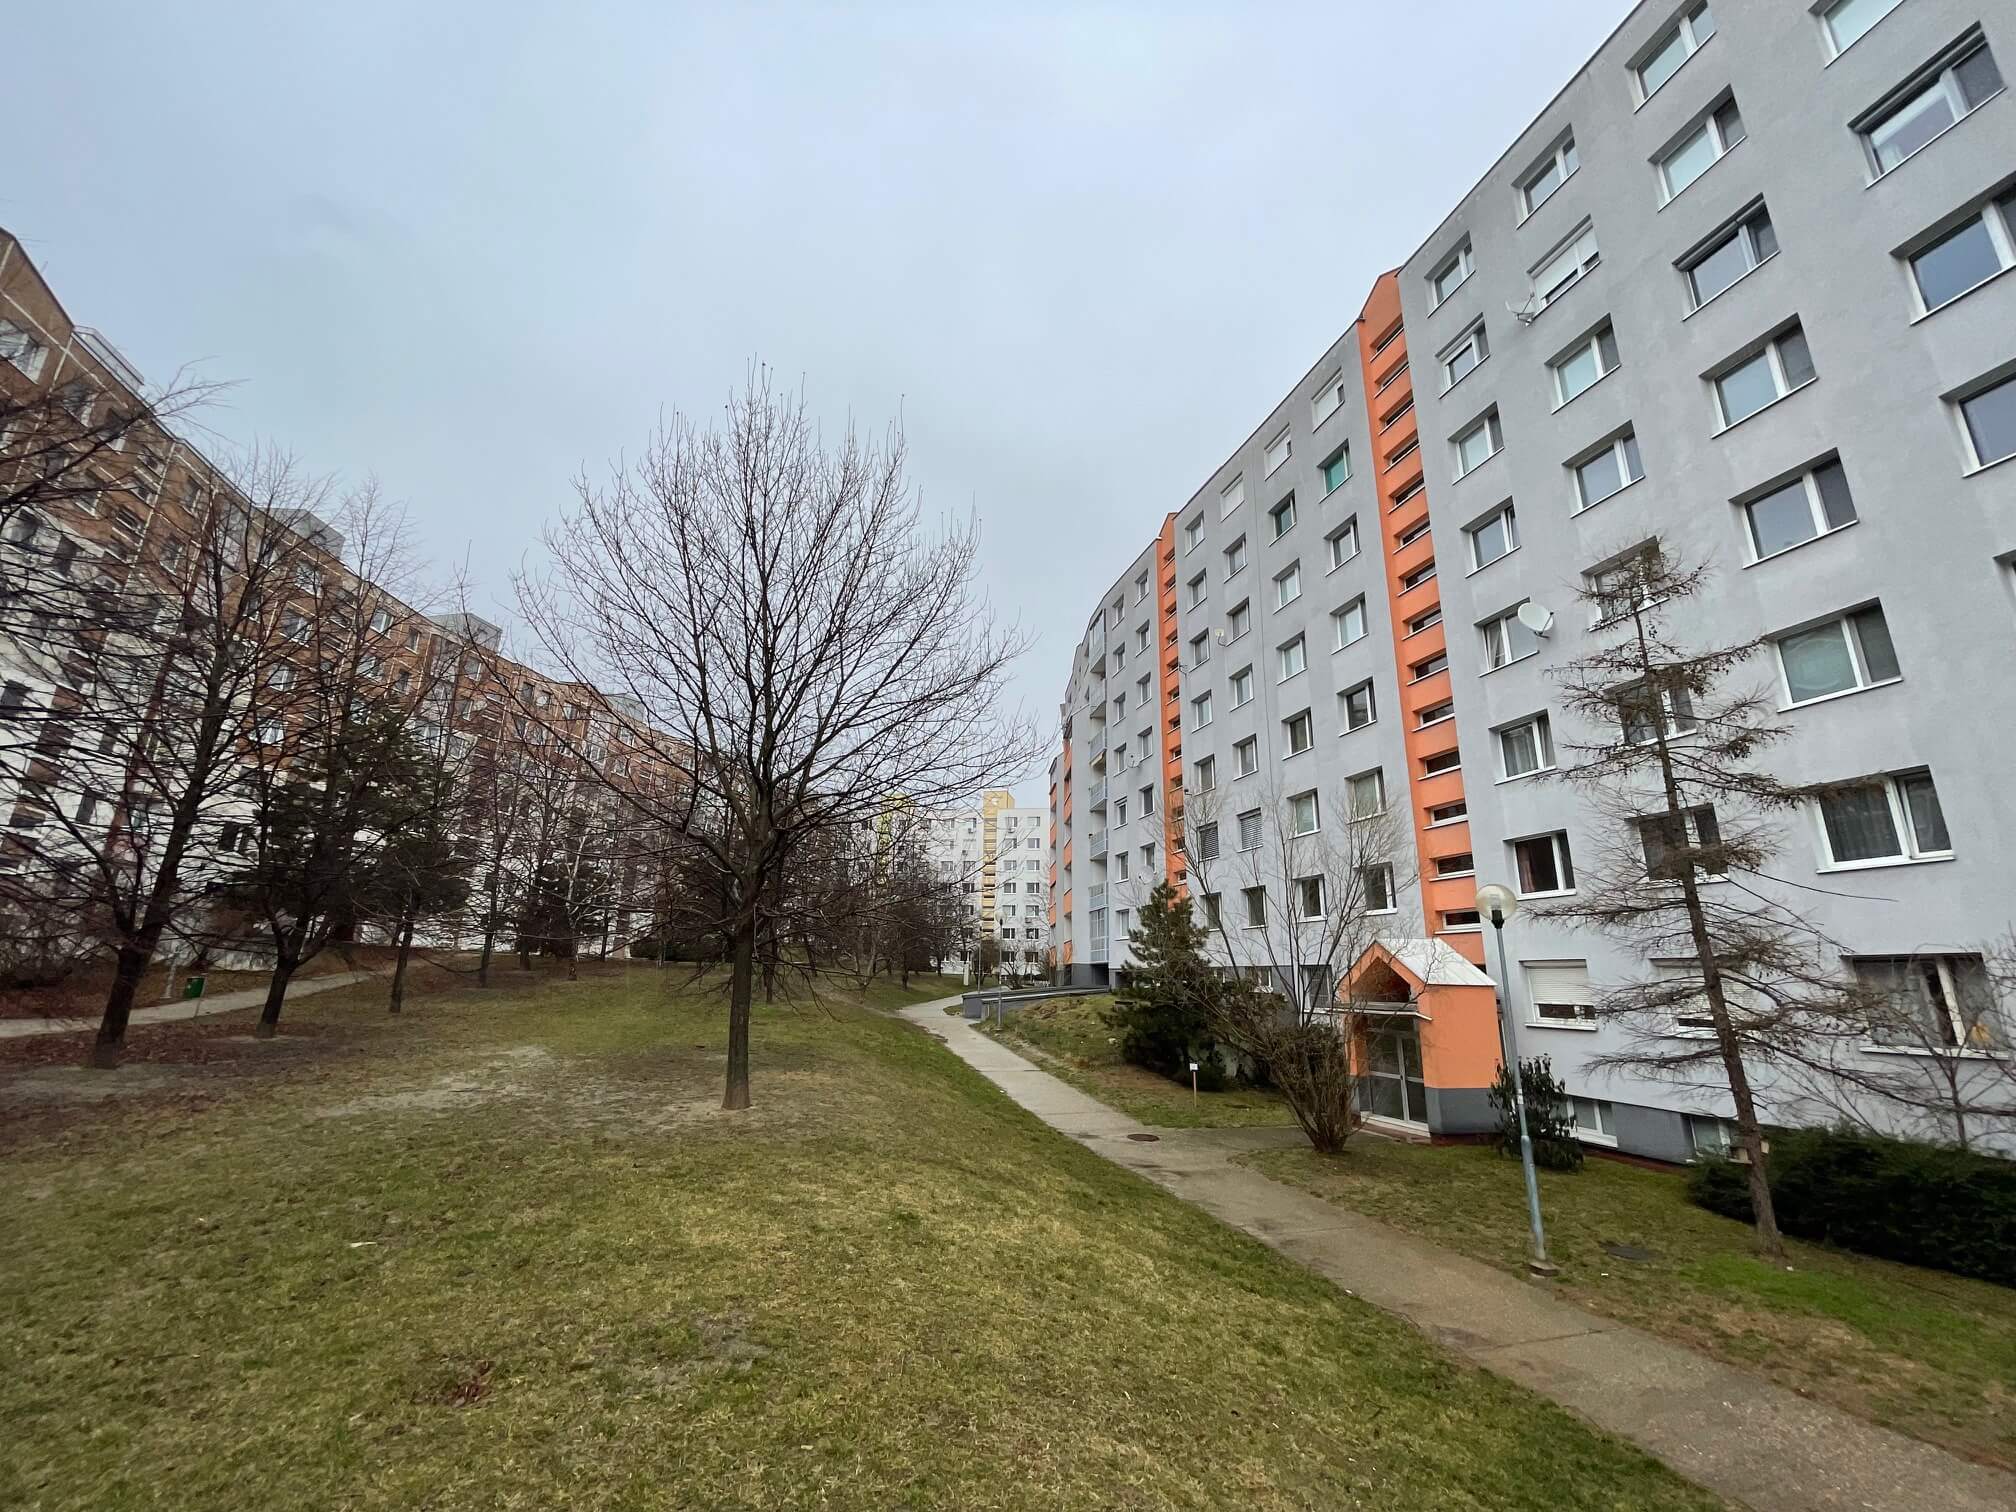 Prenajaté: Izby na prenájom v 3 izbovom byte, Karlovka, Kolísková 6 v Bratislave, 300€ izba, izba má 20m2 s  balkónom,-8